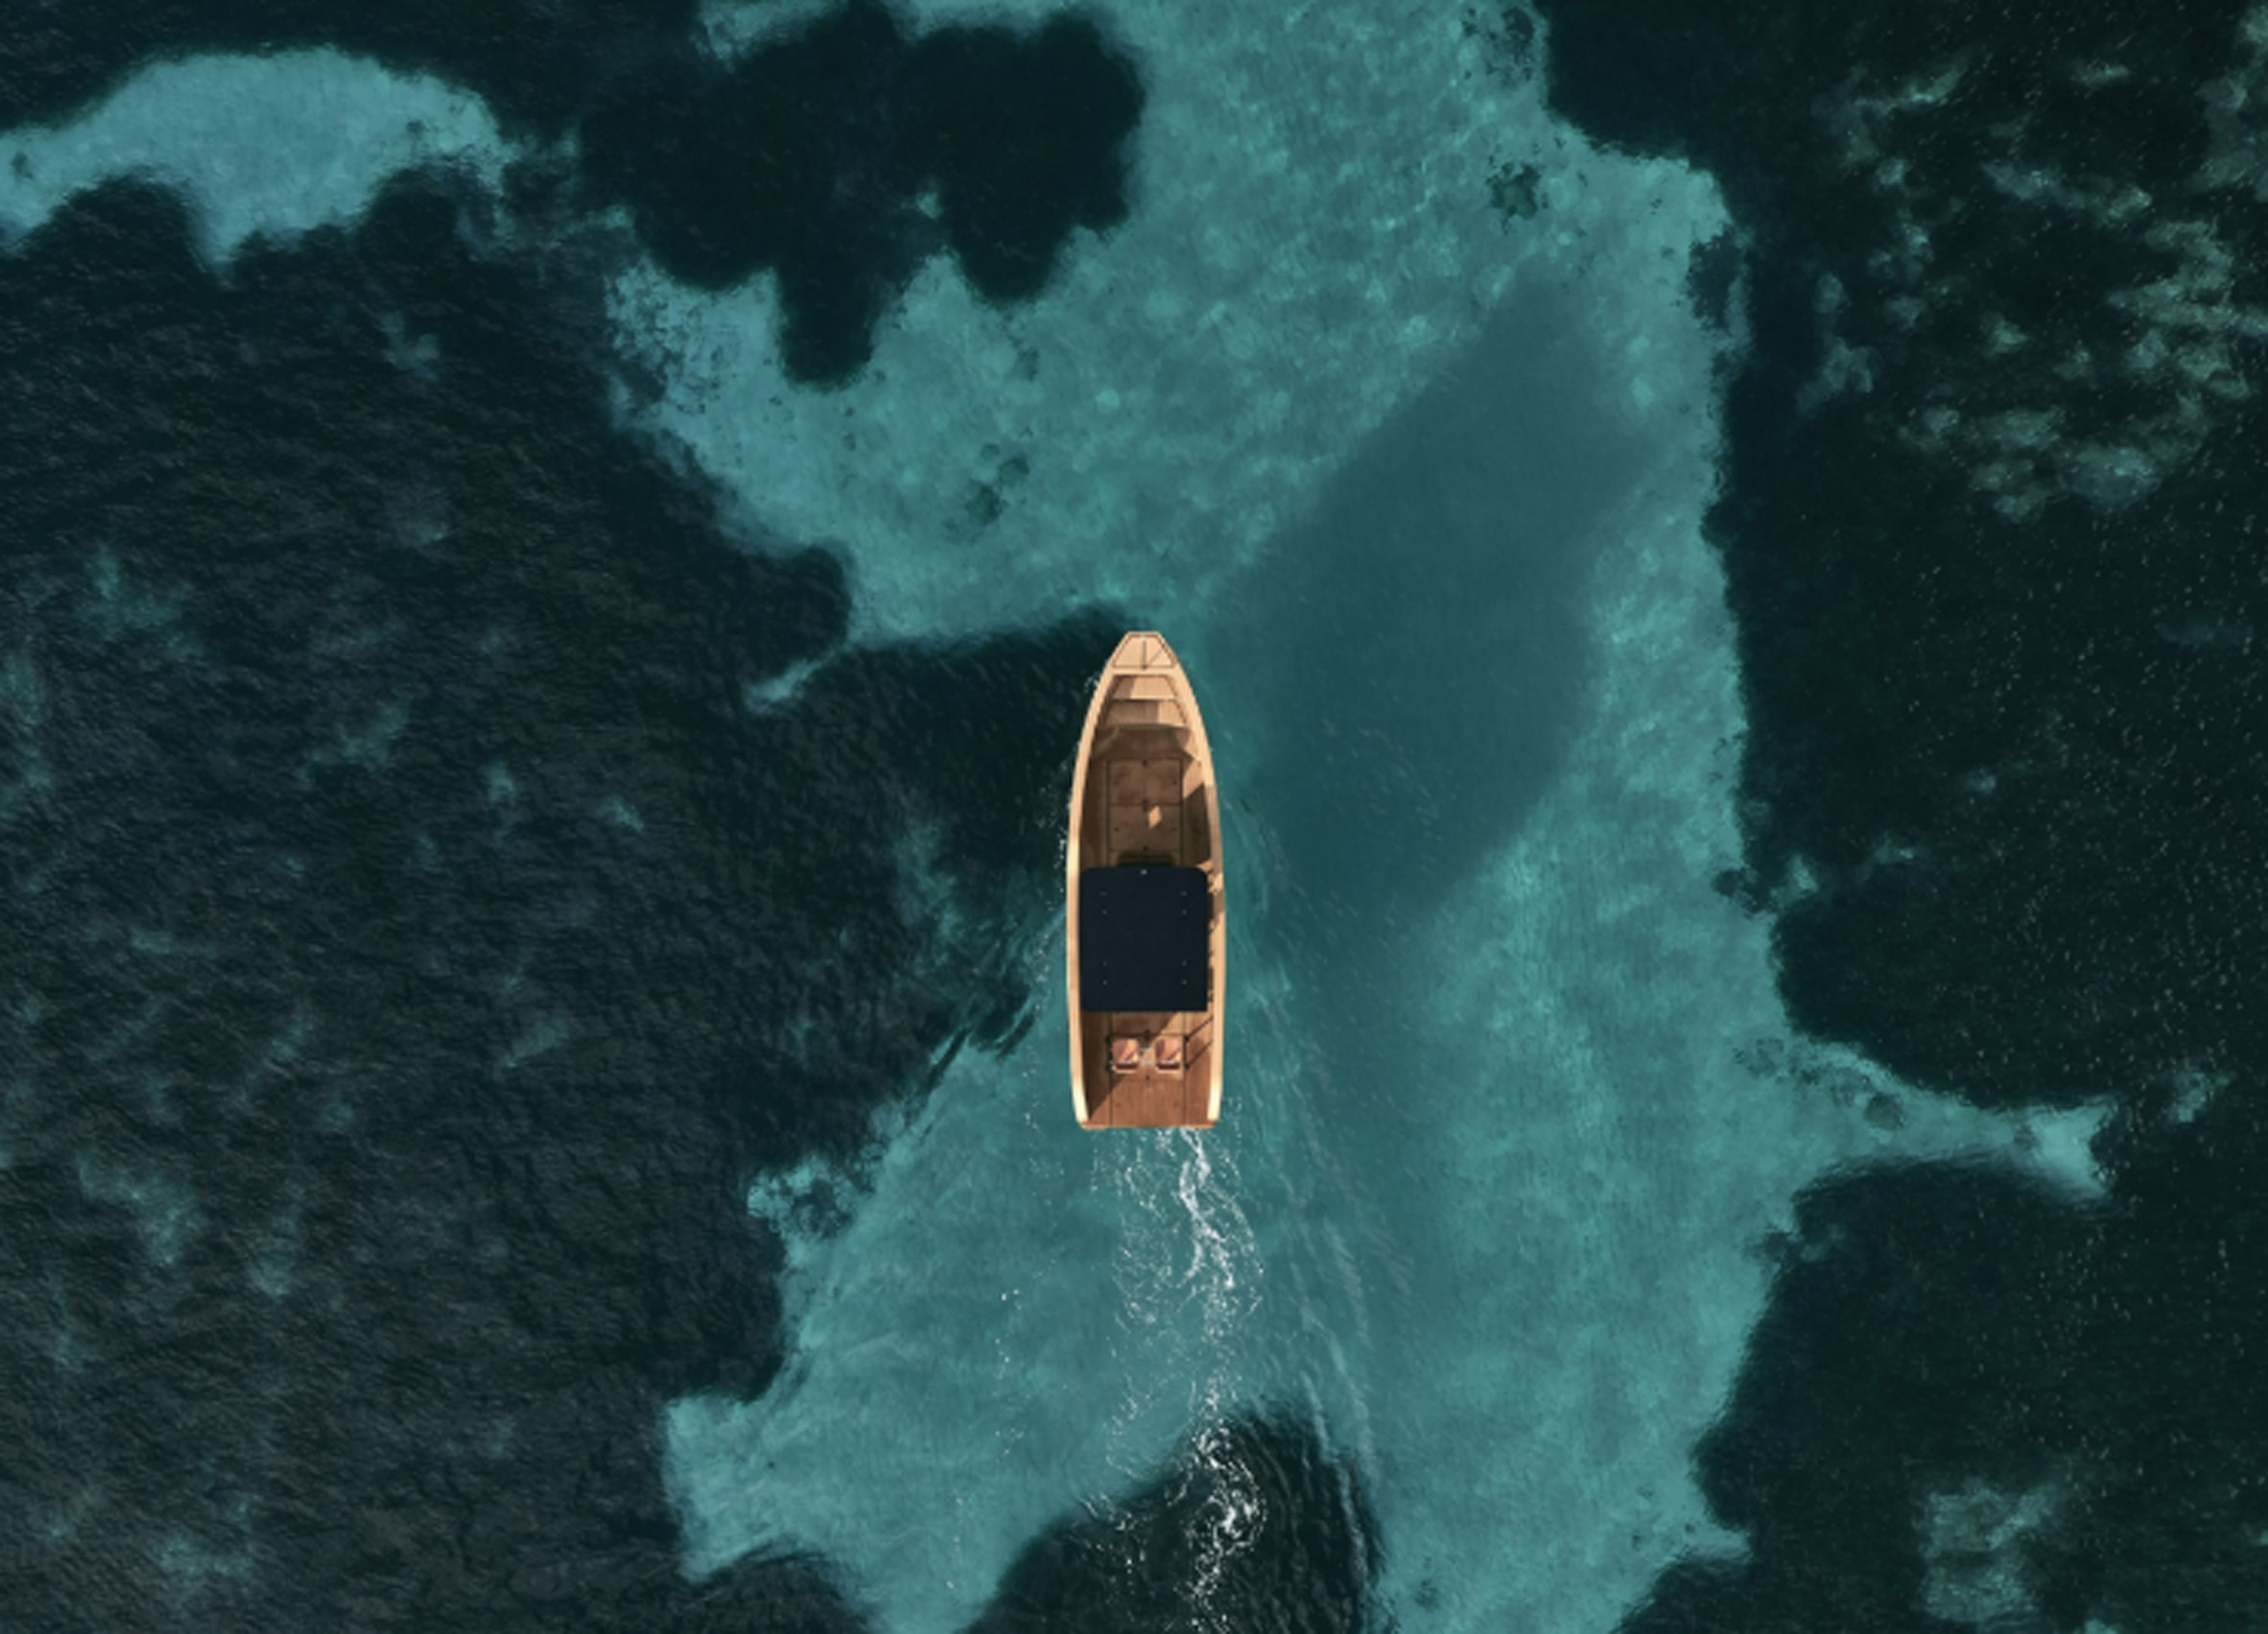 Empresa lança barco elétrico totalmente livre de emissões de carbono (Foto: Divulgação)